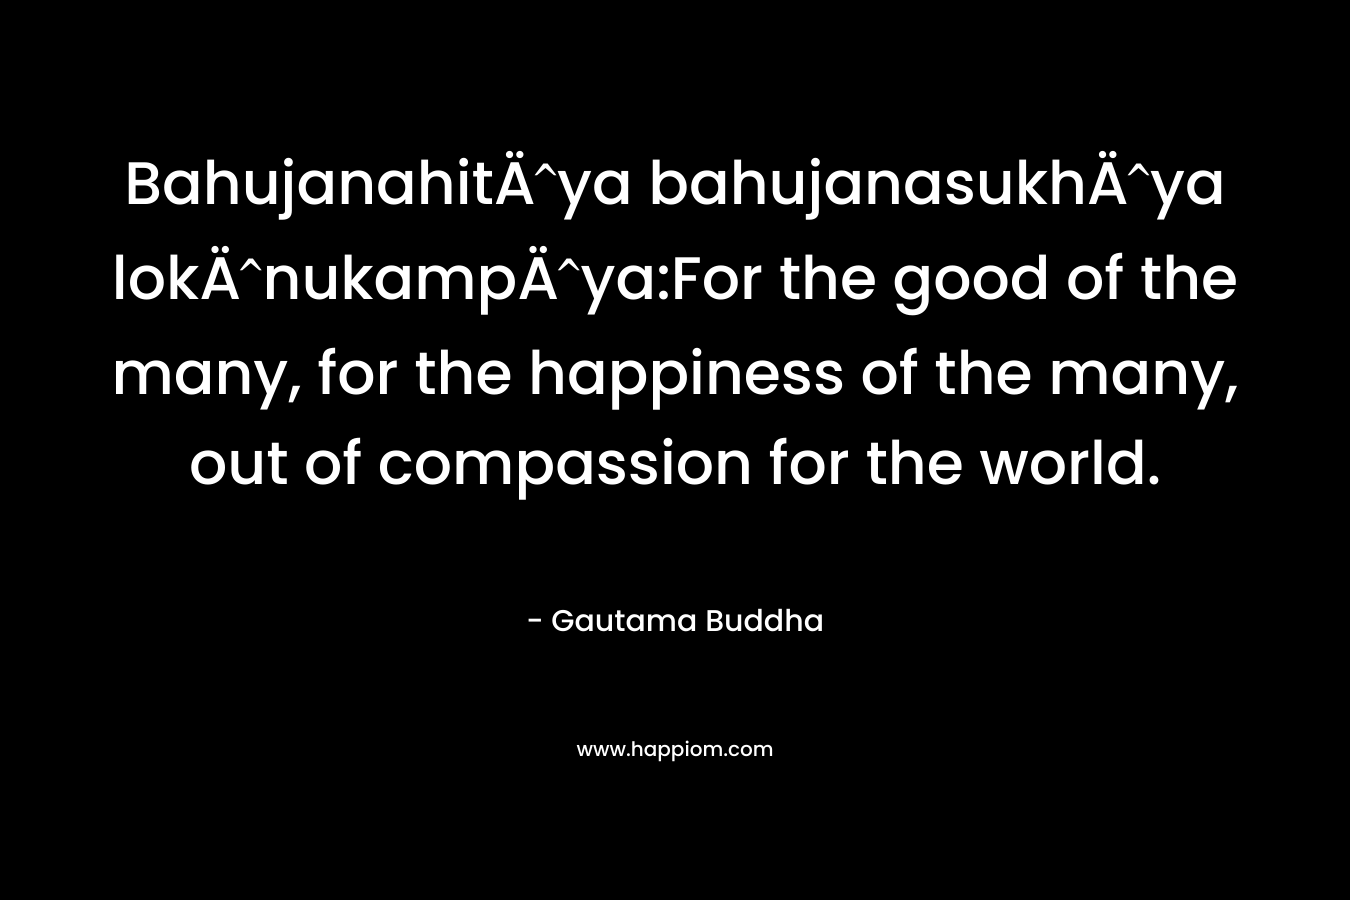 BahujanahitÄya bahujanasukhÄya lokÄnukampÄya:For the good of the many, for the happiness of the many, out of compassion for the world.